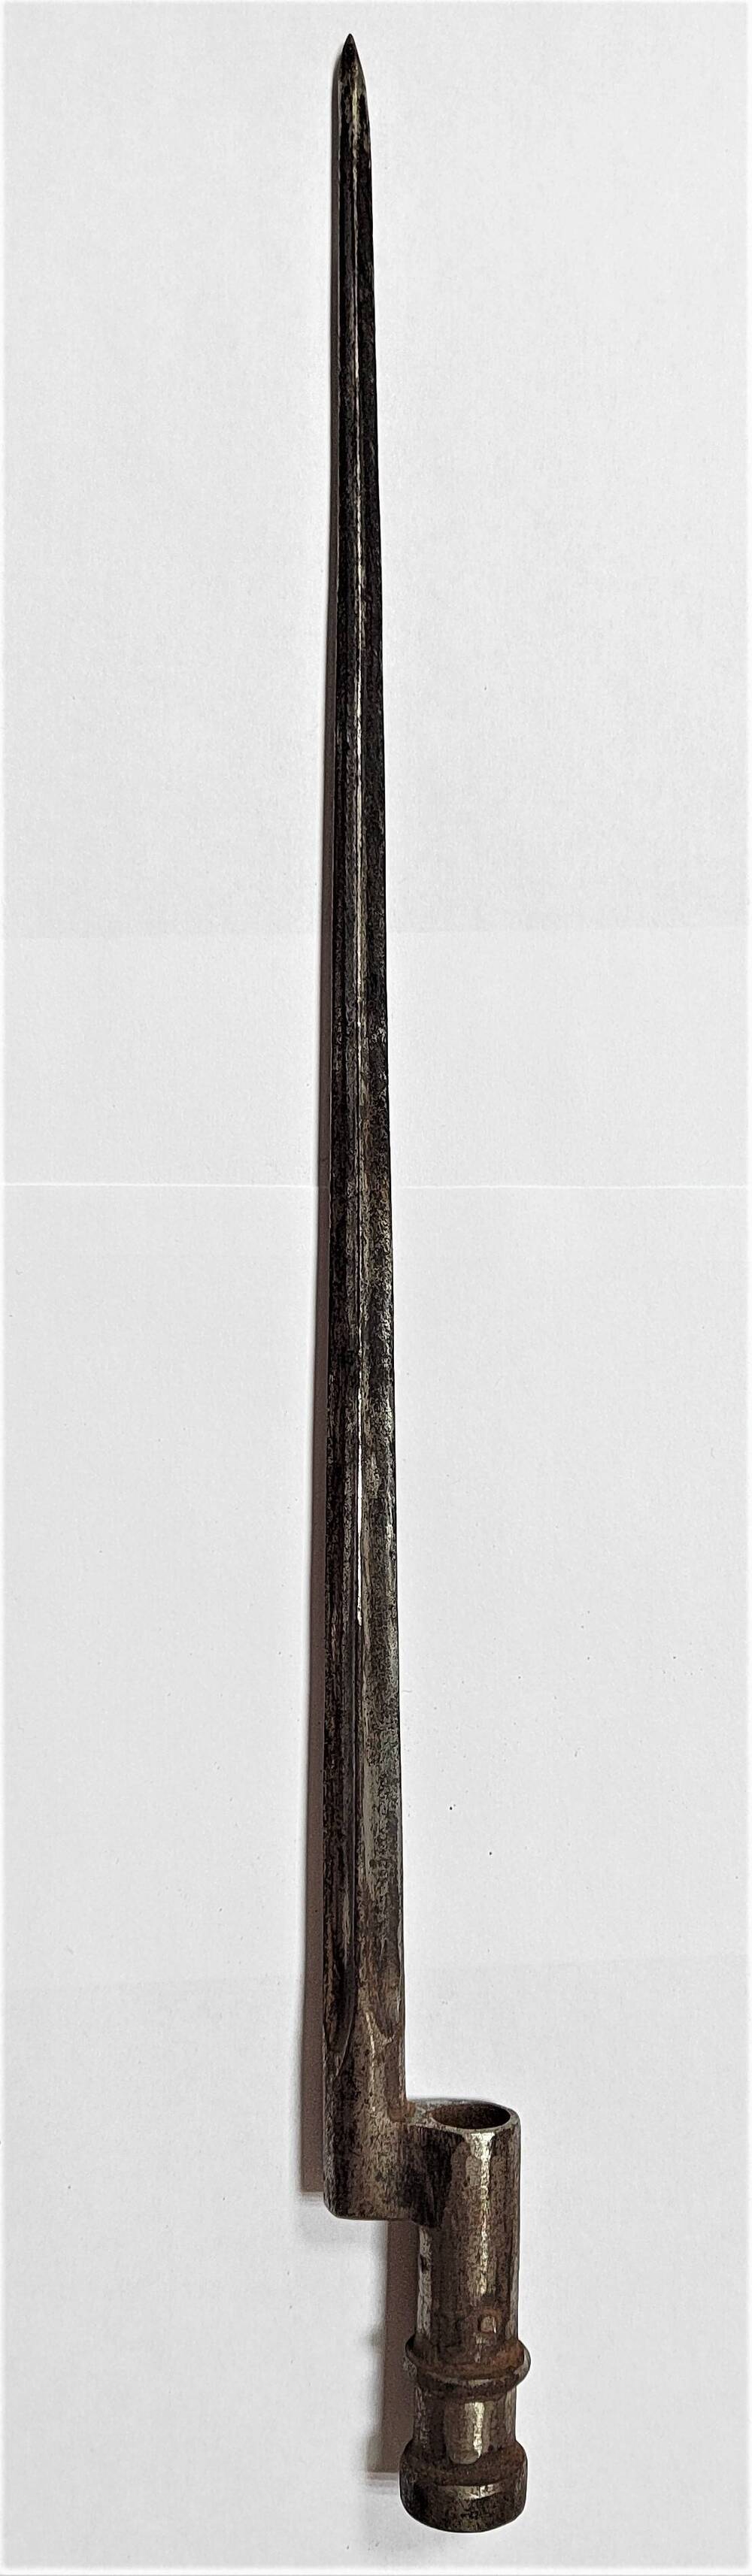 Штык-четырёхгранник к винтовке Мосина образца 1891 г.,